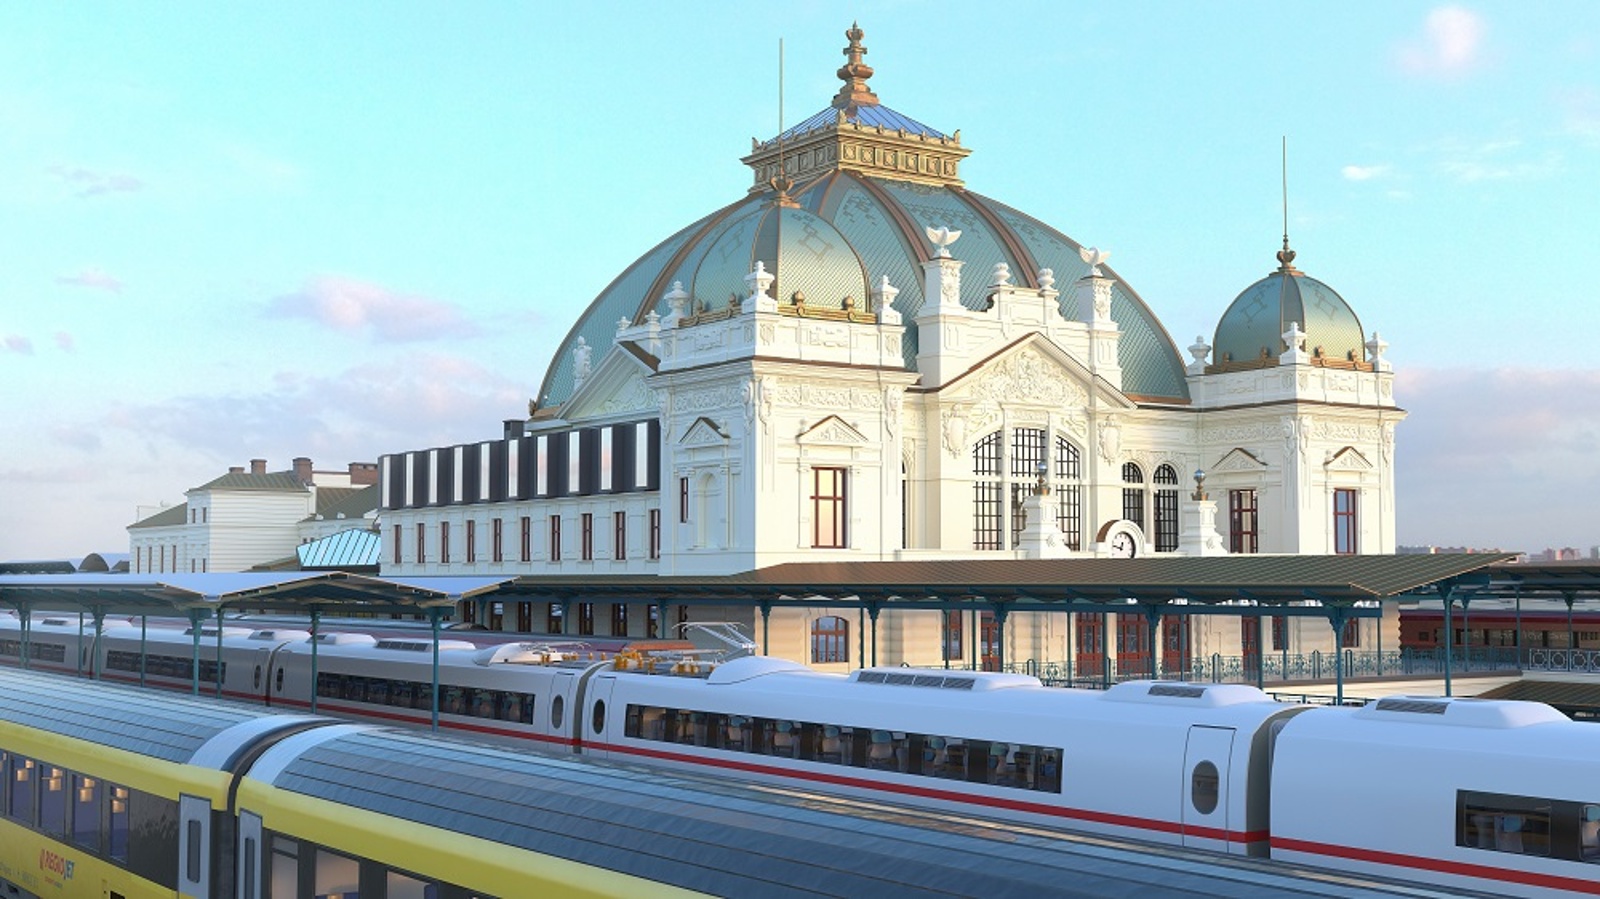 Spodní hala hlavního nádraží v Plzni se uzavře. Začne se rekonstruovat -  Plzeňský deník